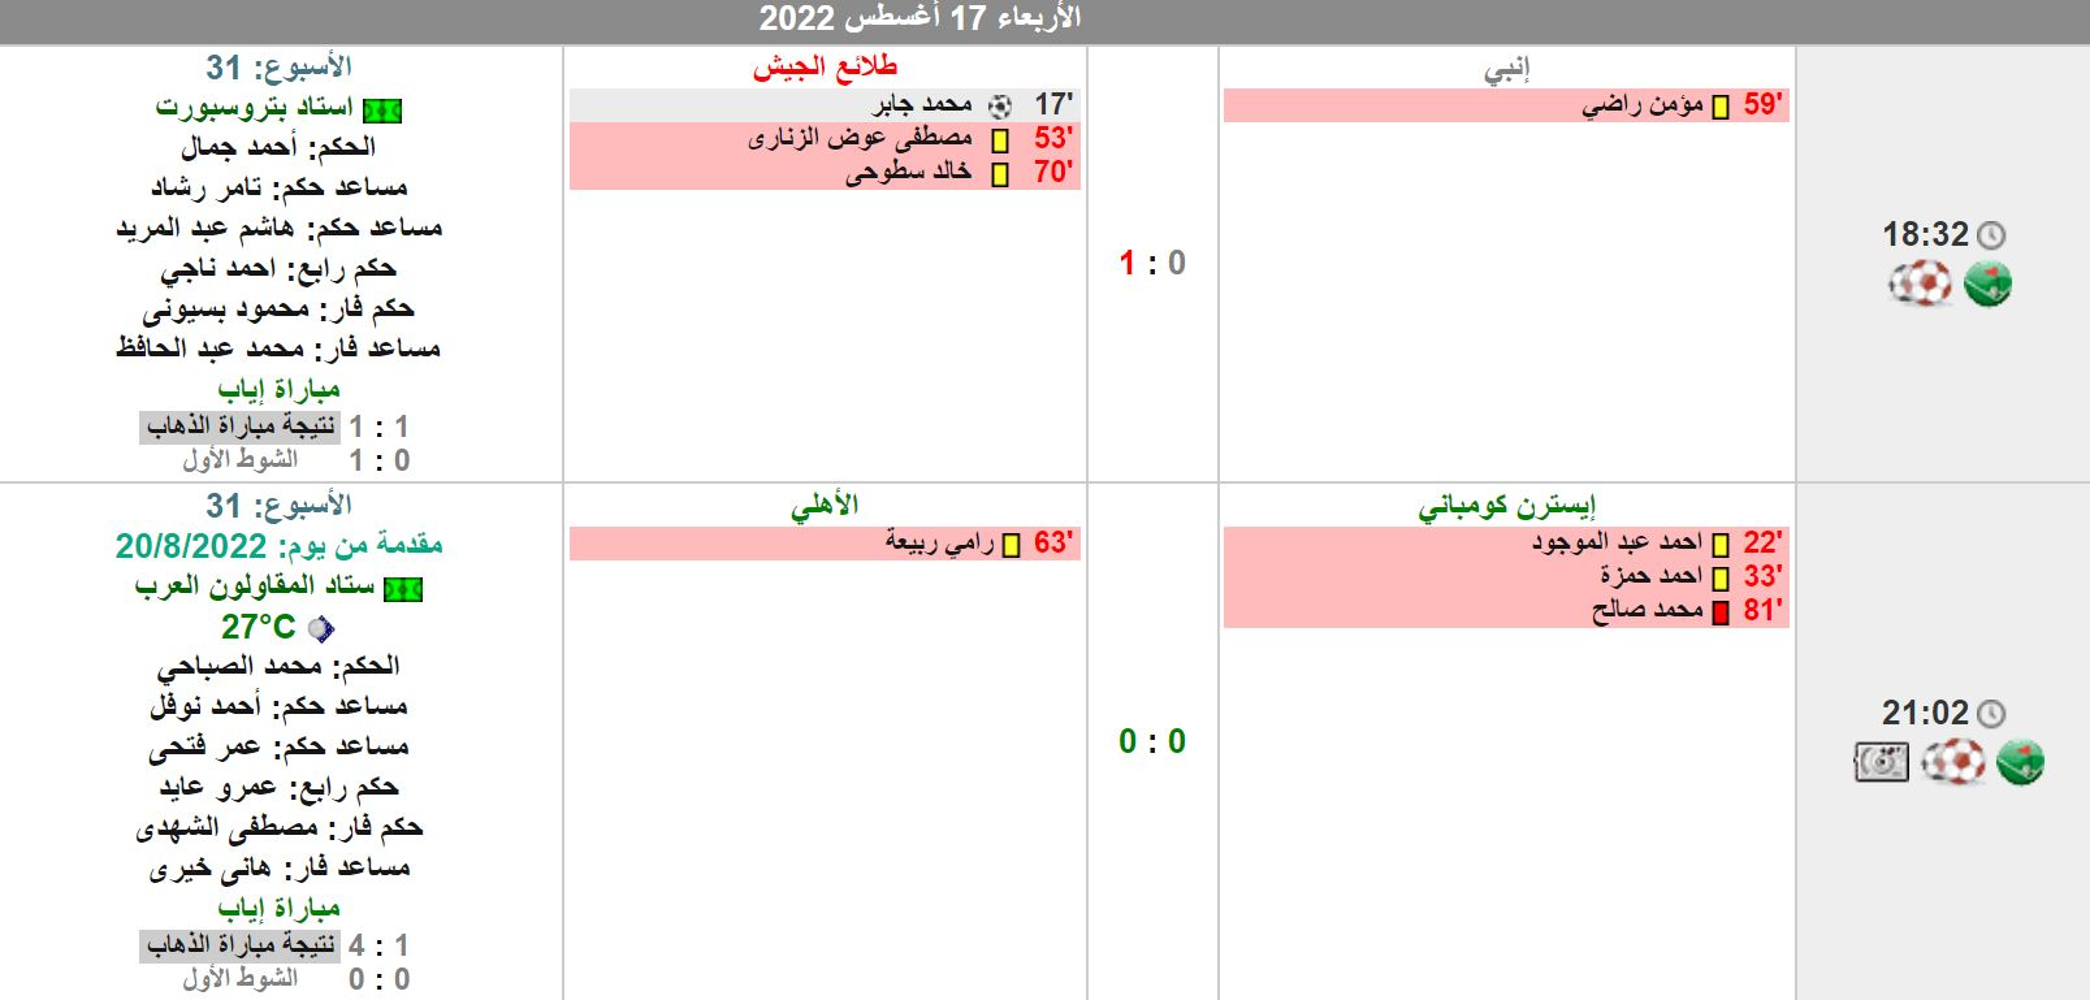 نتائج مباريات اليوم الأول في الجولة 31 من الدوري المصري 2022